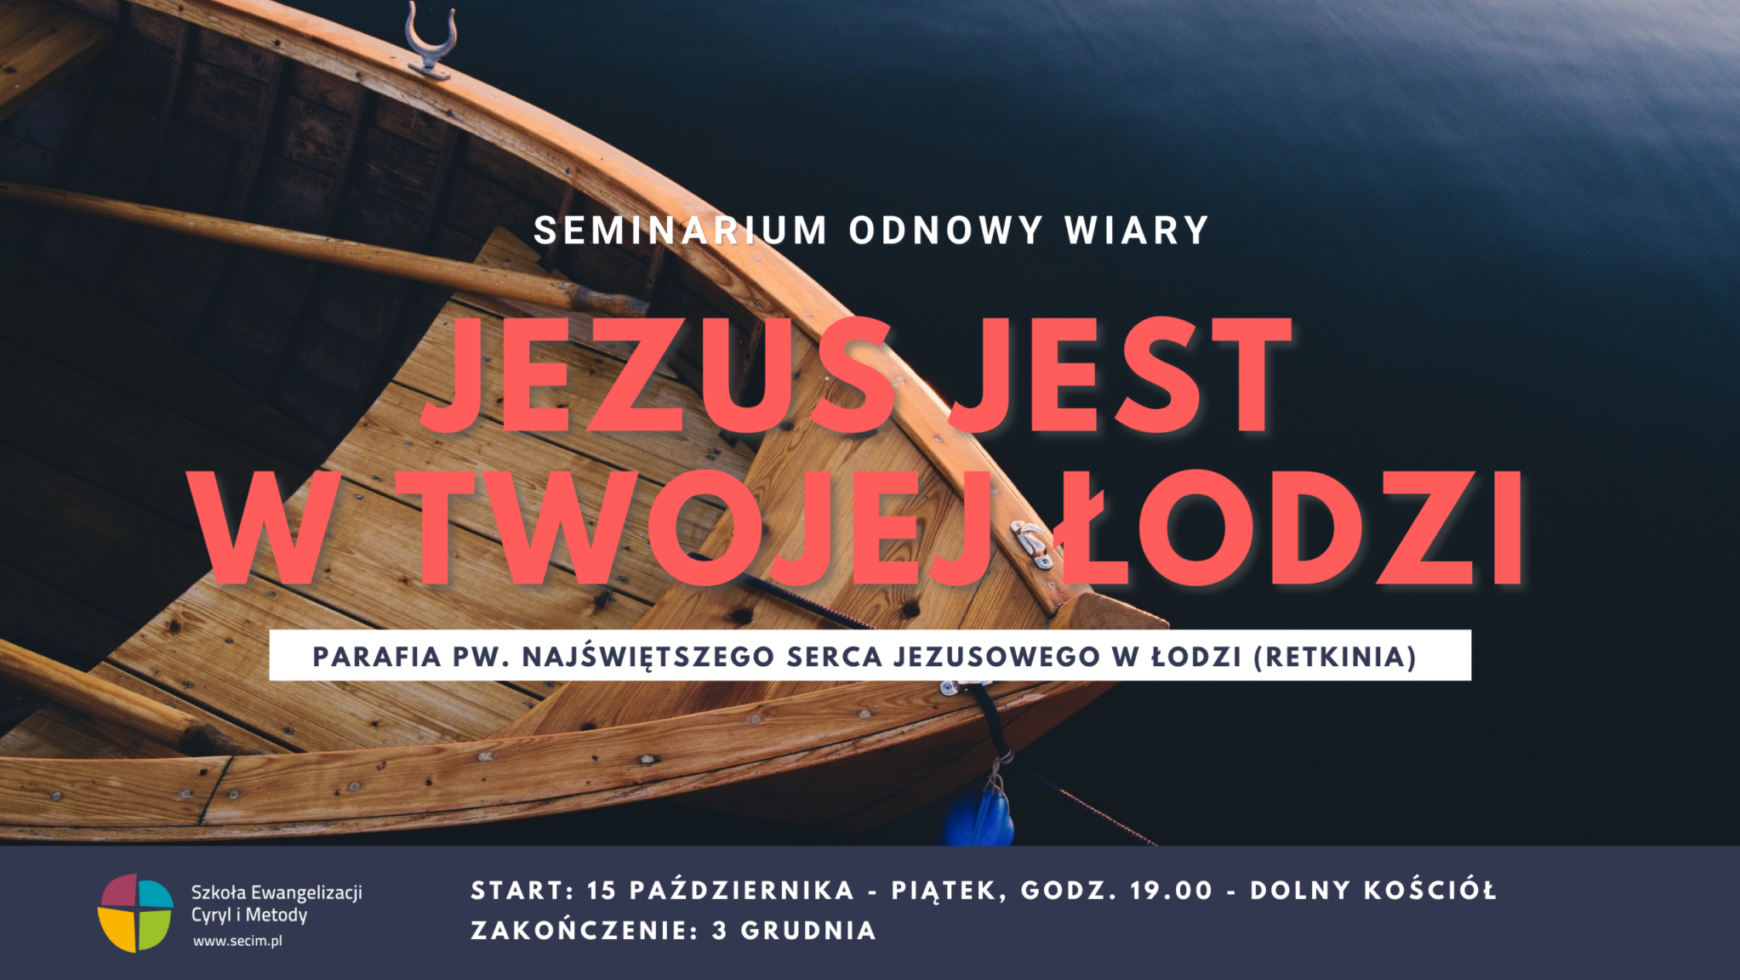 Seminarium Odnowy Wiary, kolejne spotkanie w Łodzi 12.11.2021.